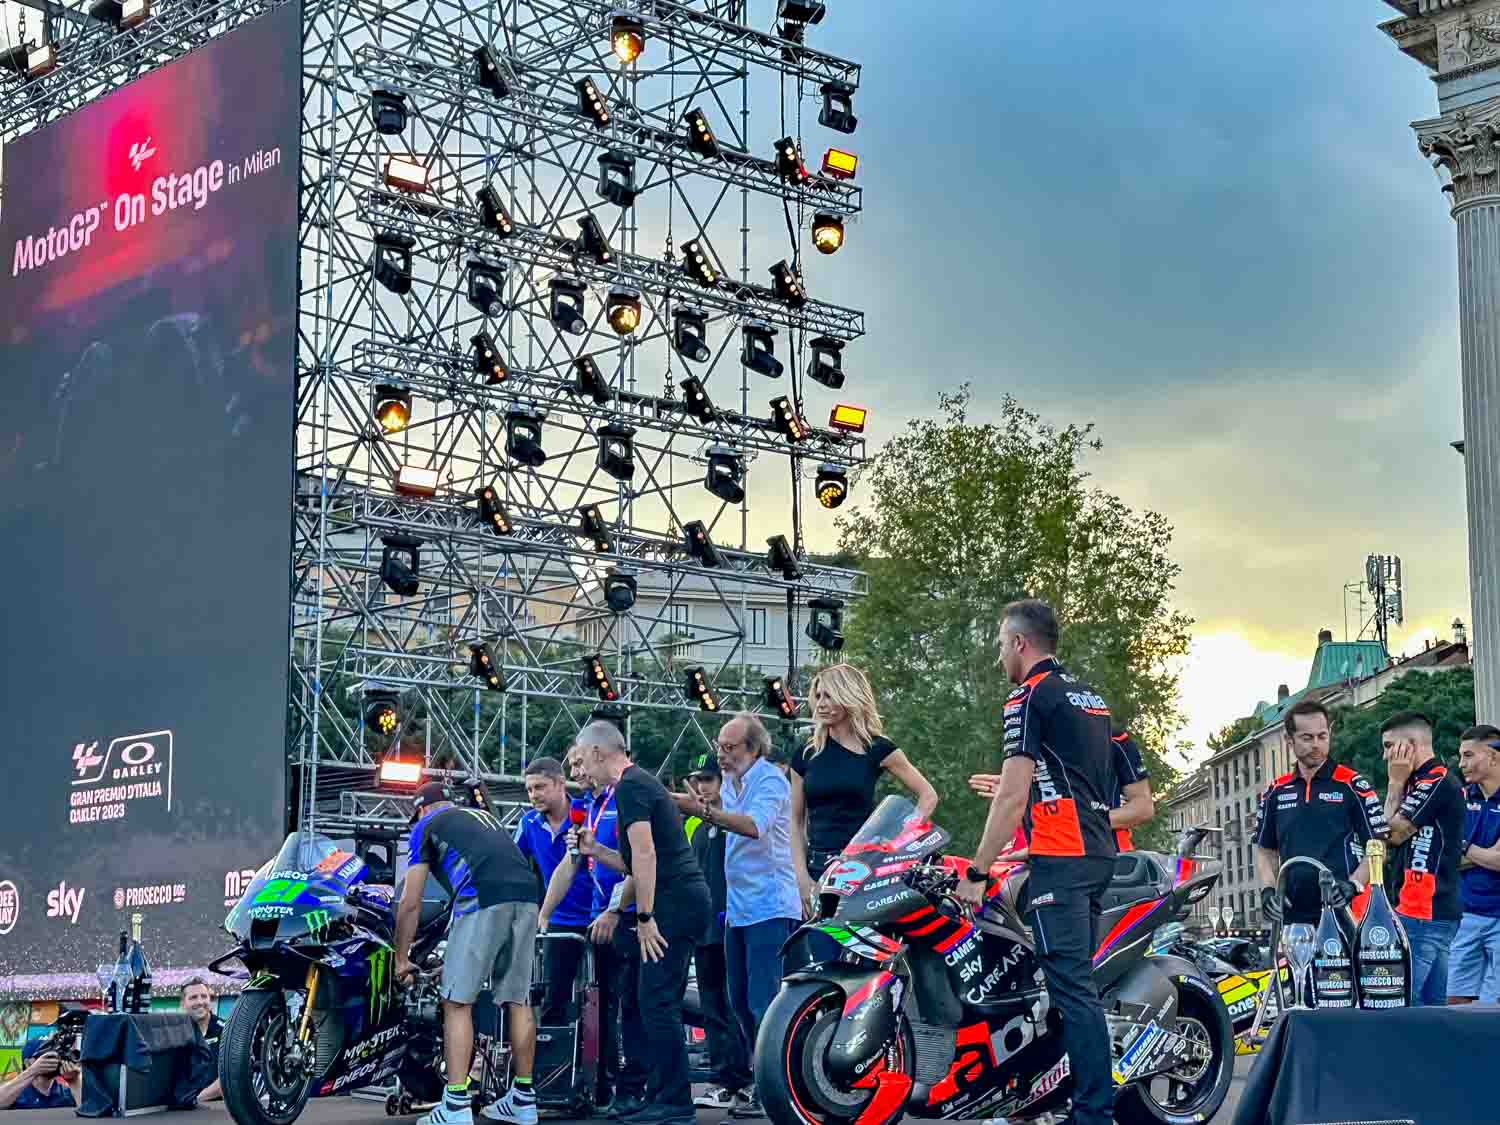 MotoGP On Stage, l'evento che fa da preludio alla gara più attesa del Motomondiale, si è tenuto ieri a Milano all'Arco della Pace. 